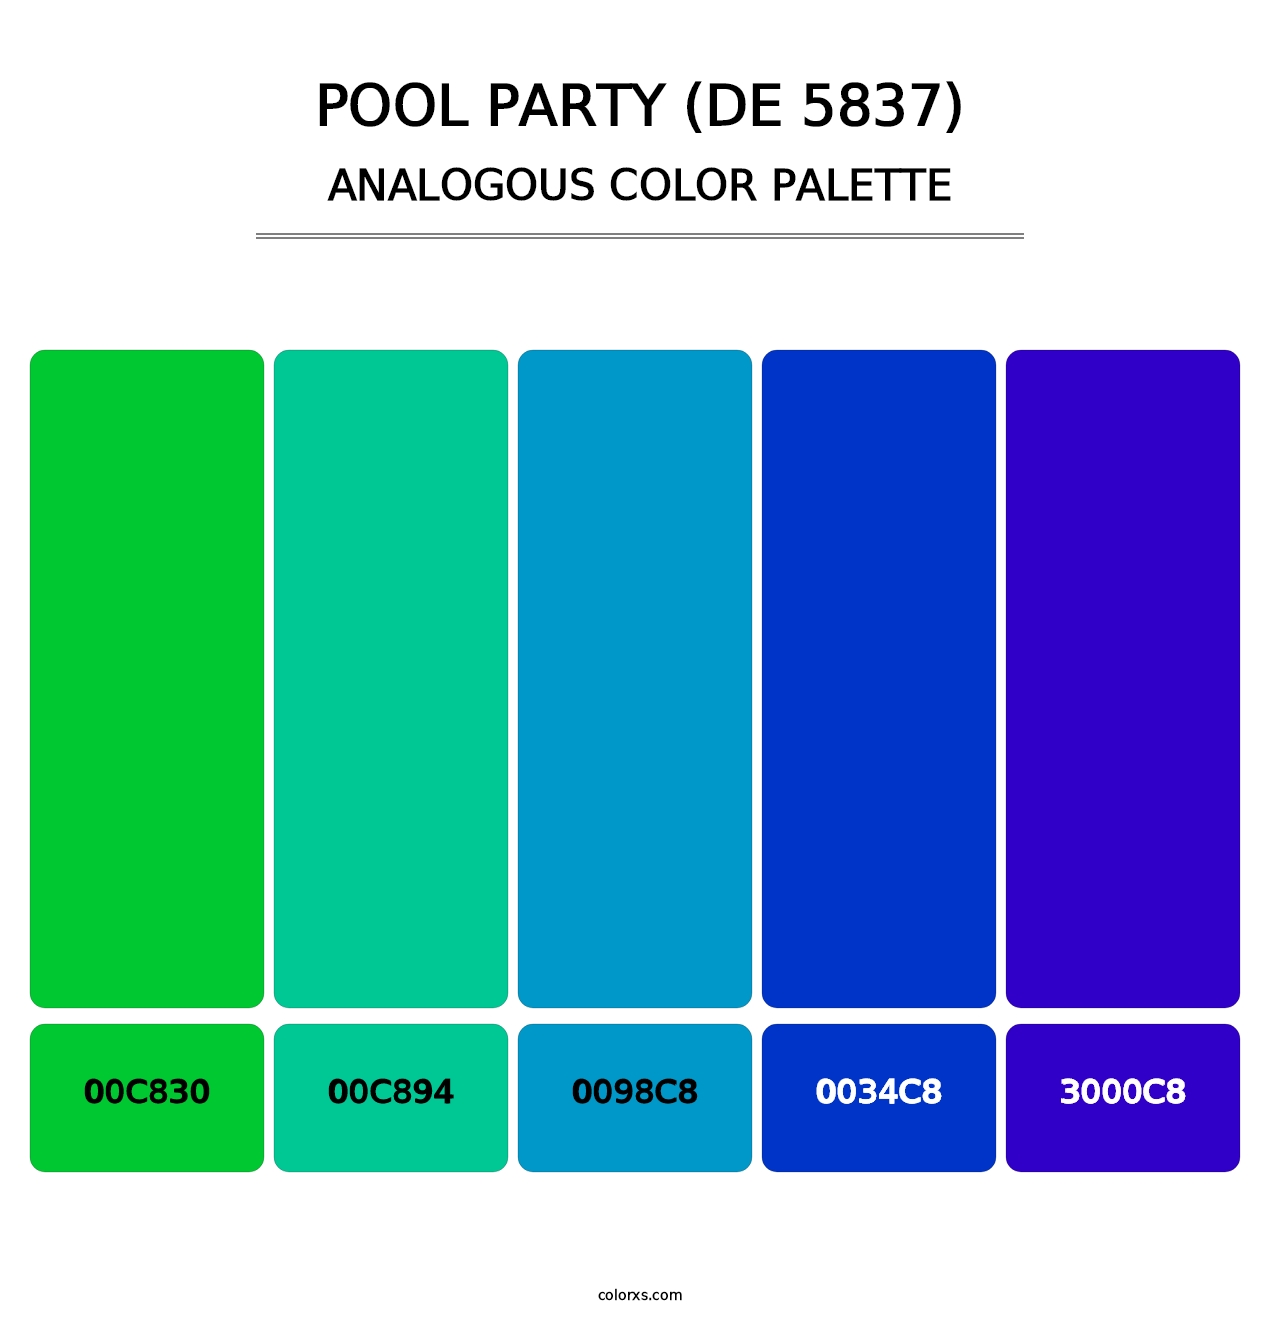 Pool Party (DE 5837) - Analogous Color Palette